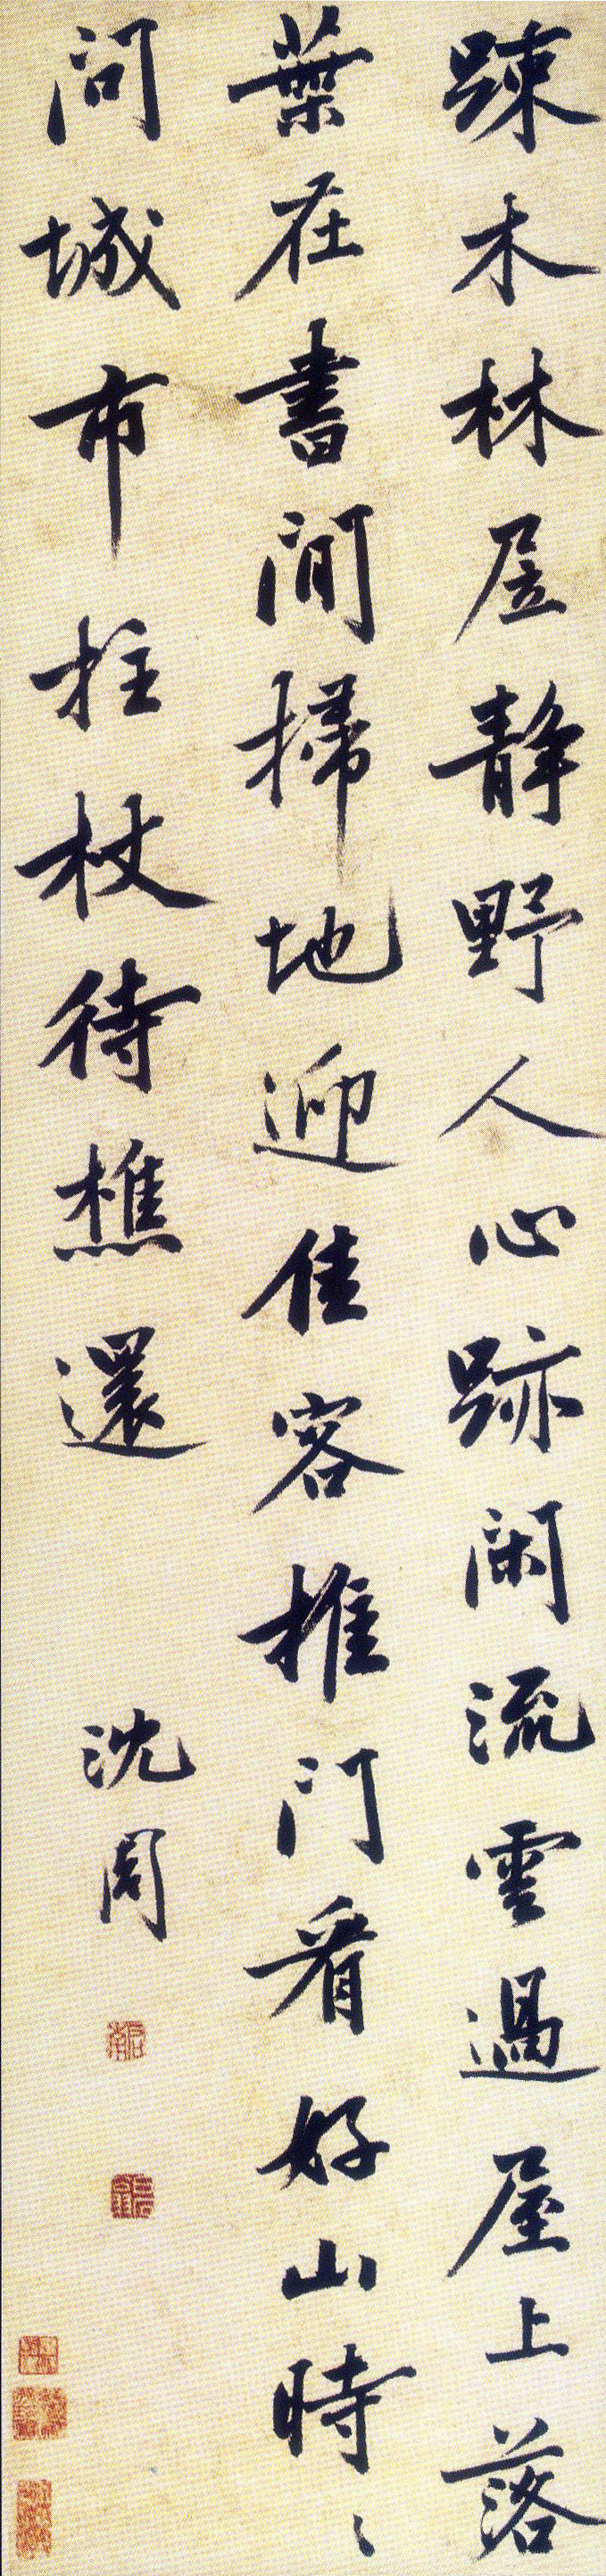 沈周行书《五律诗轴》 -苏州博物馆藏(图1)